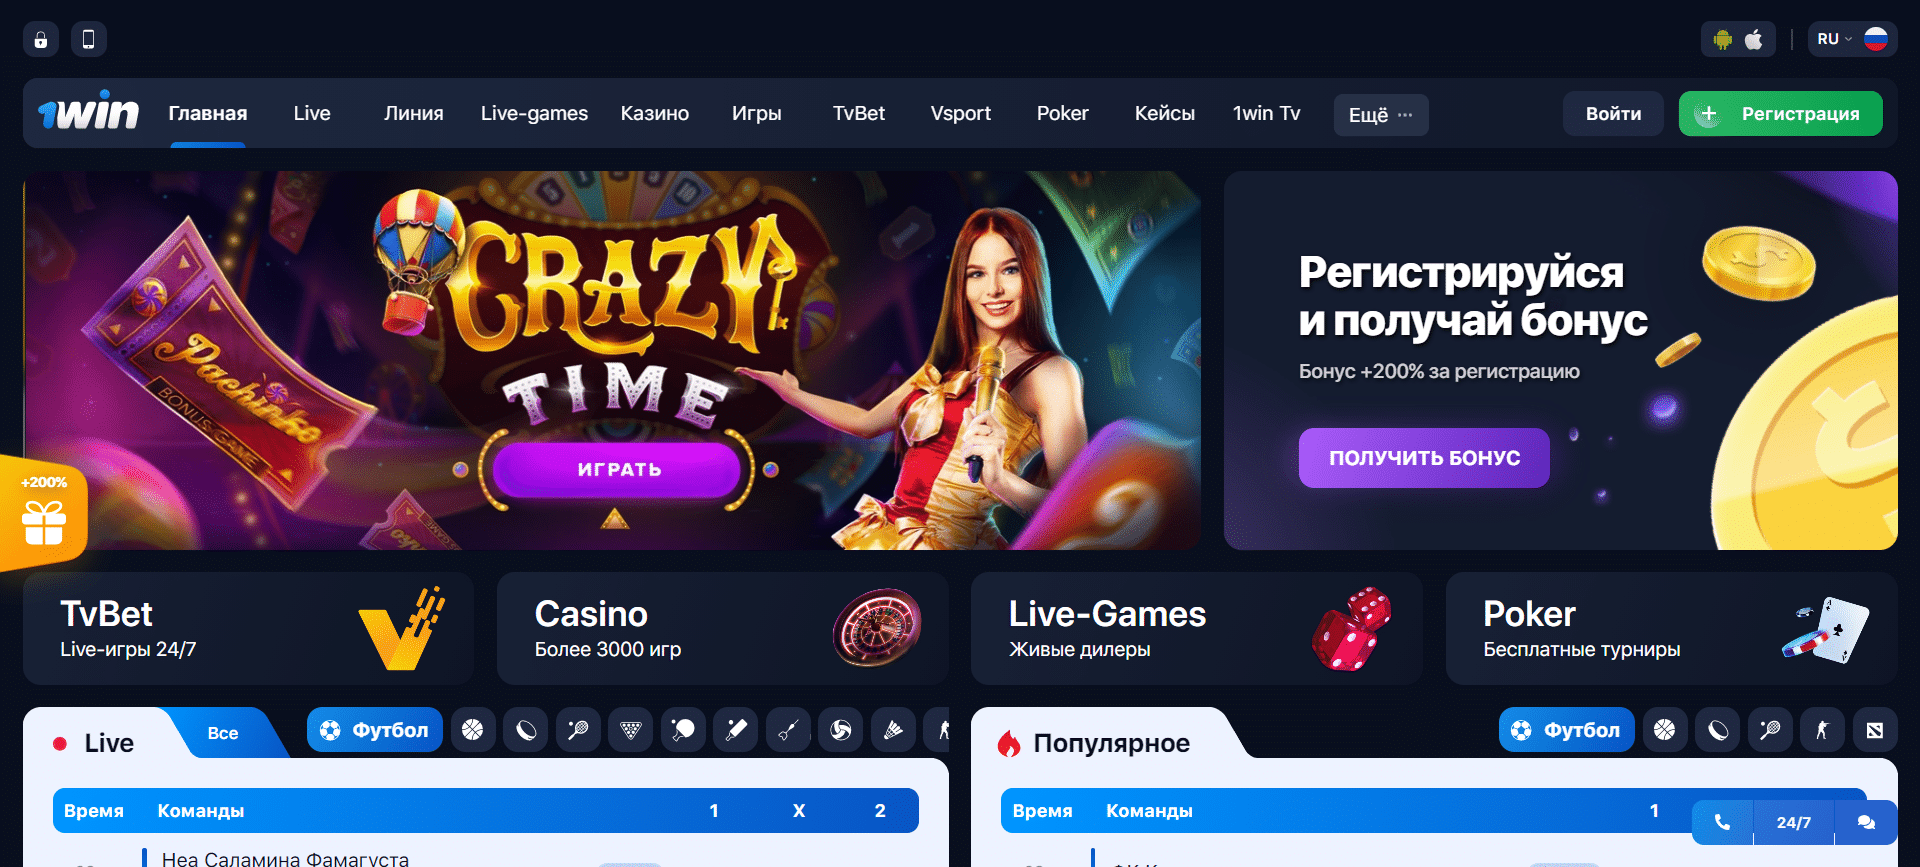 1win casino сайт онлайн играть бесплатно